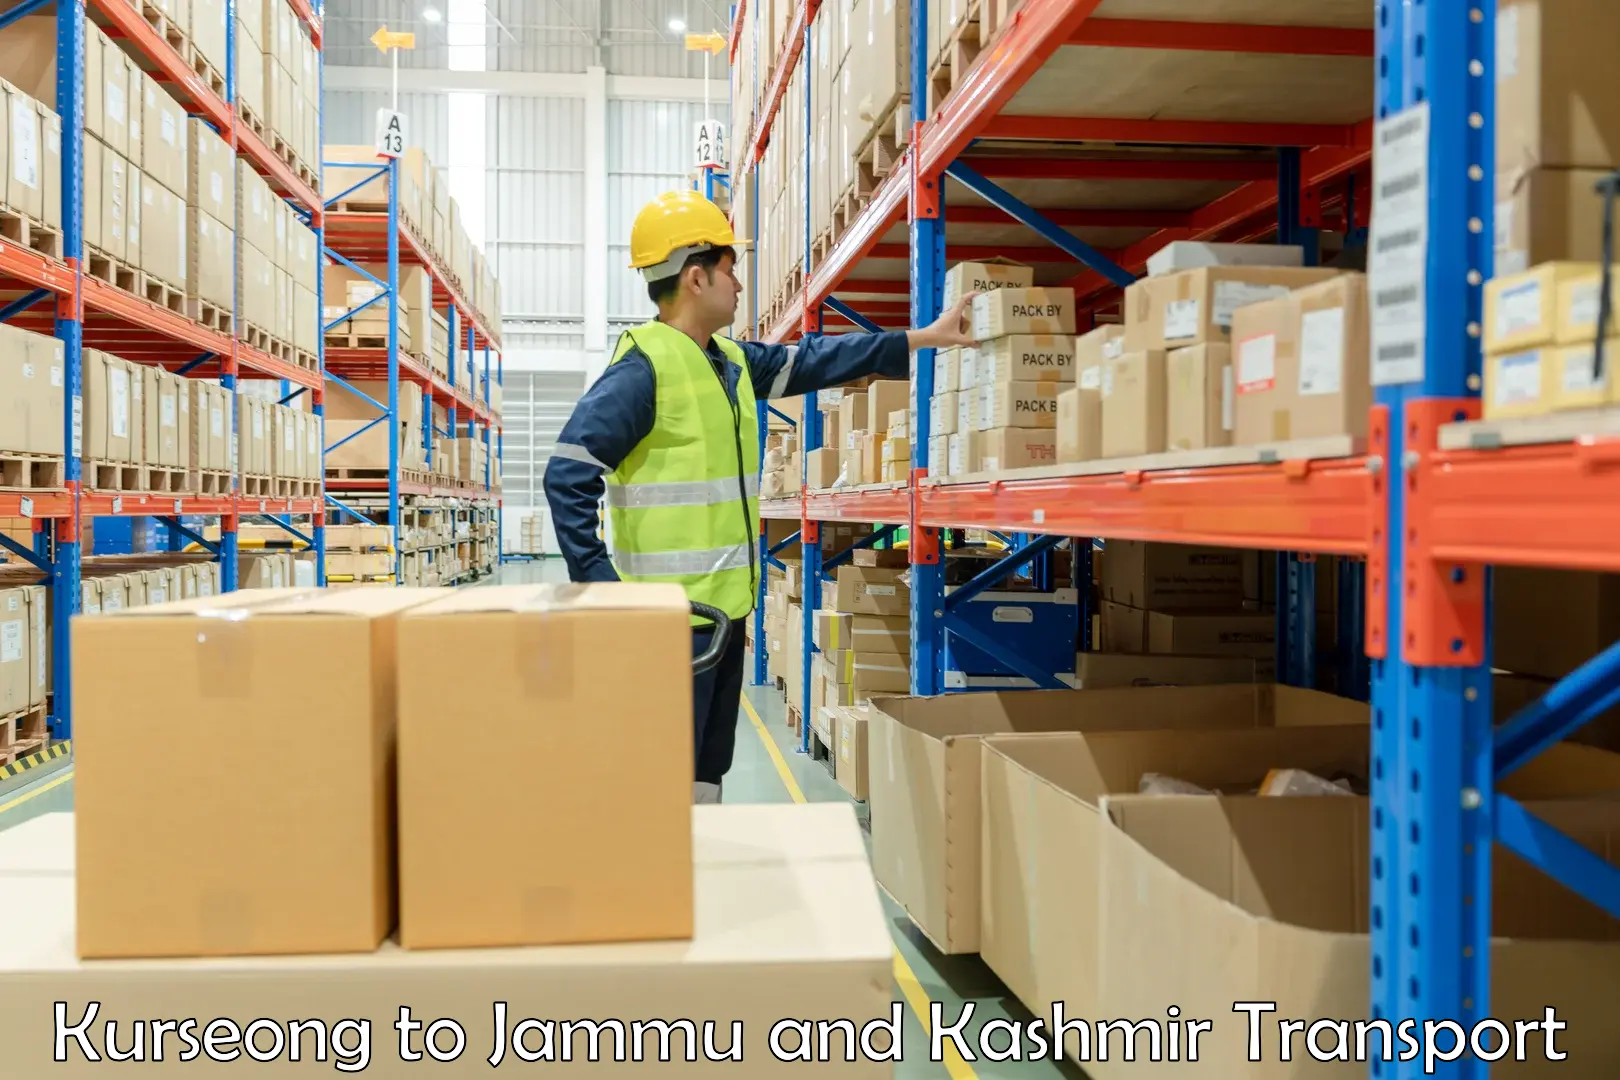 International cargo transportation services Kurseong to Jammu and Kashmir